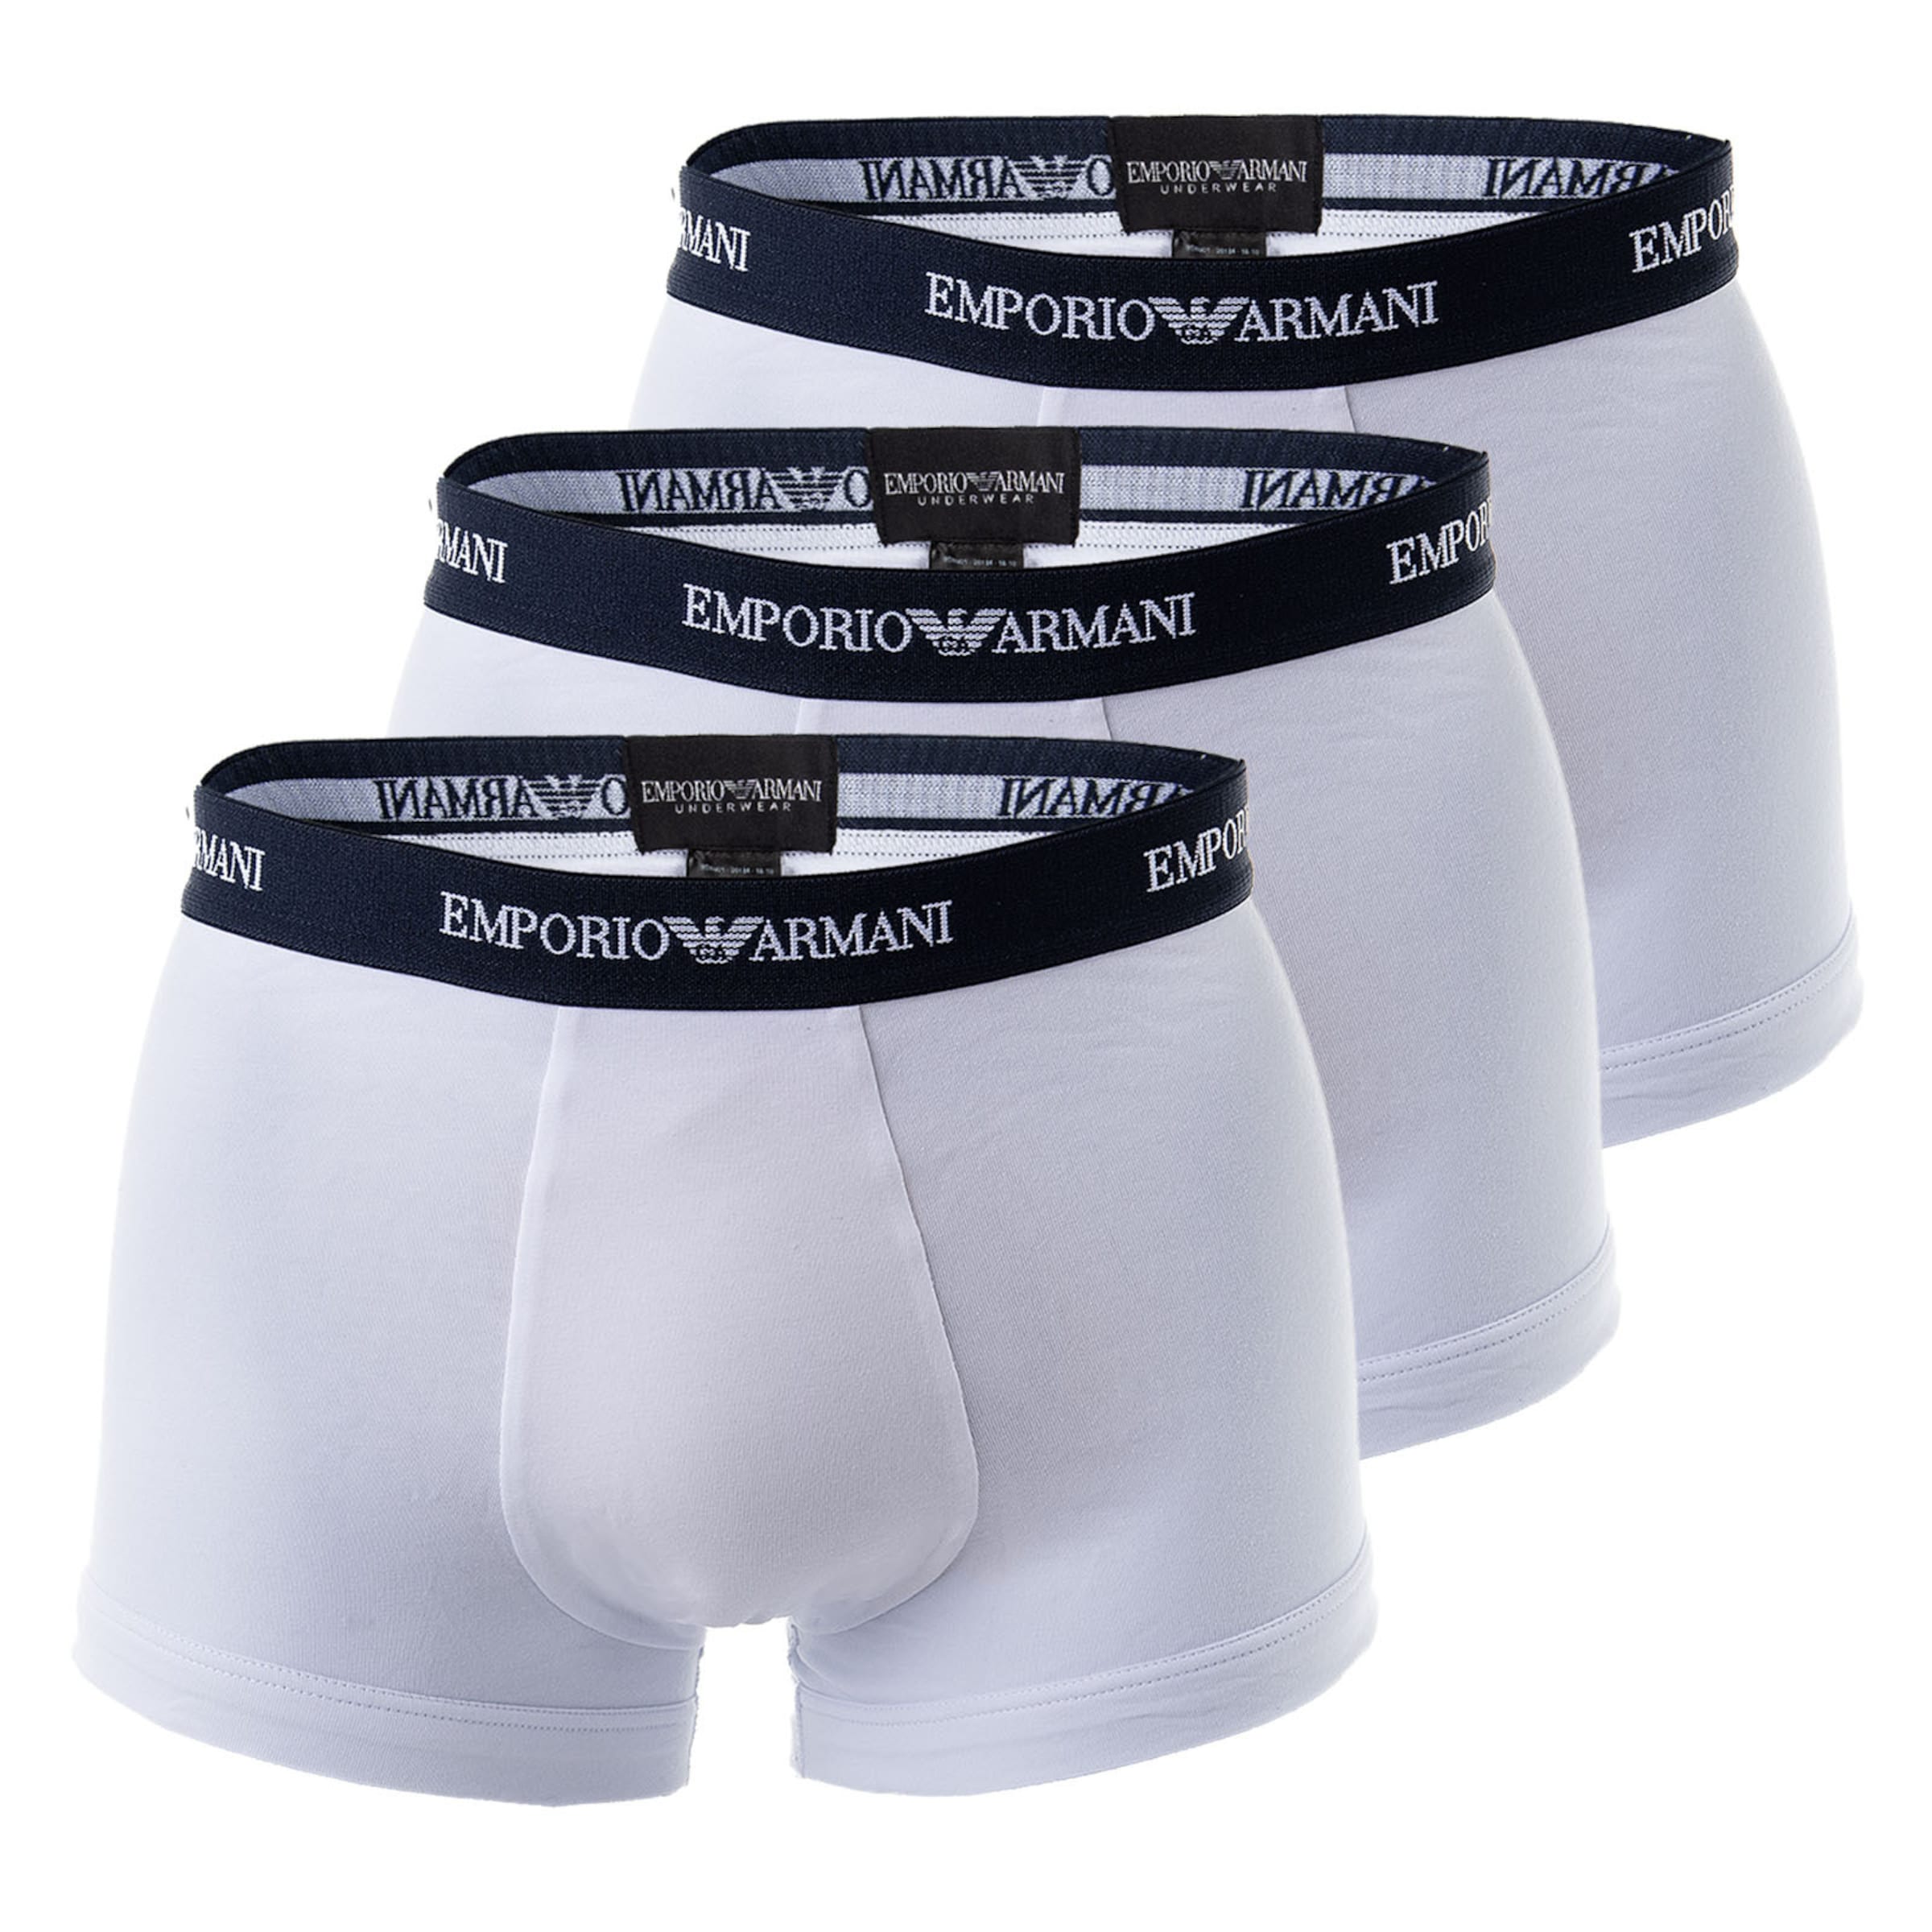 Männer Wäsche Emporio Armani Boxershorts in Weiß - XG25769